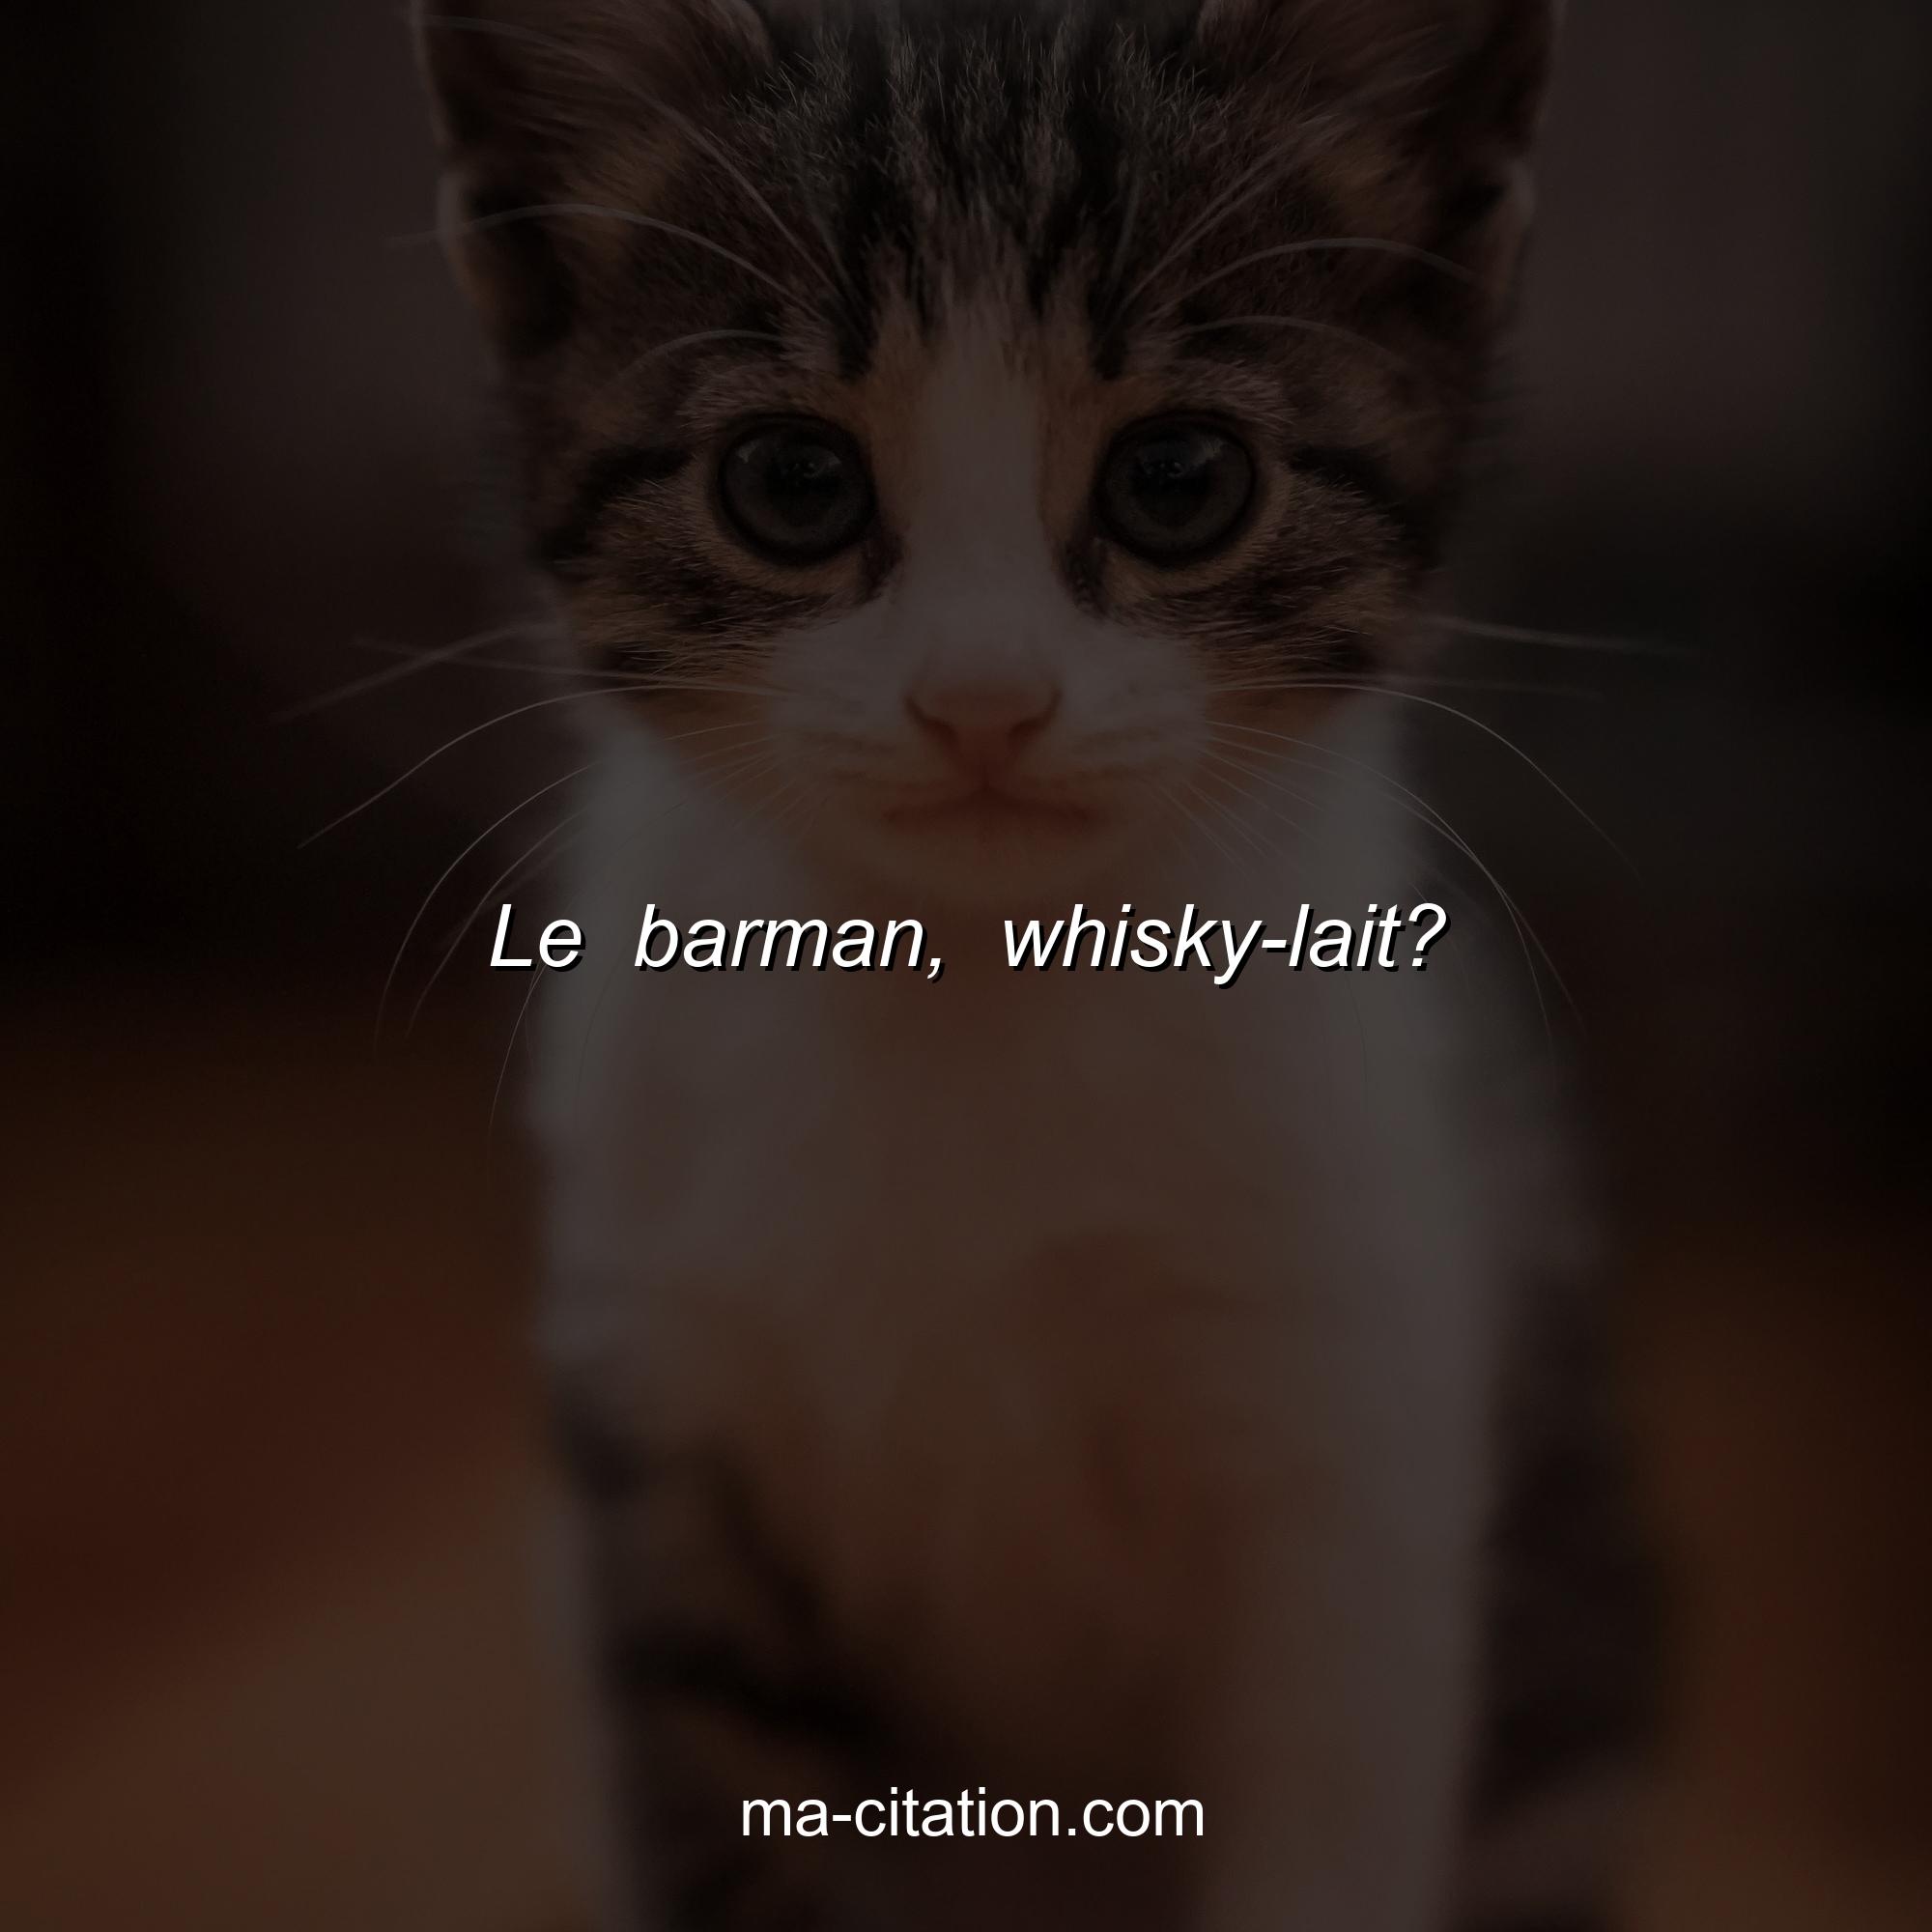 Ma-Citation.com : Le barman, whisky-lait?